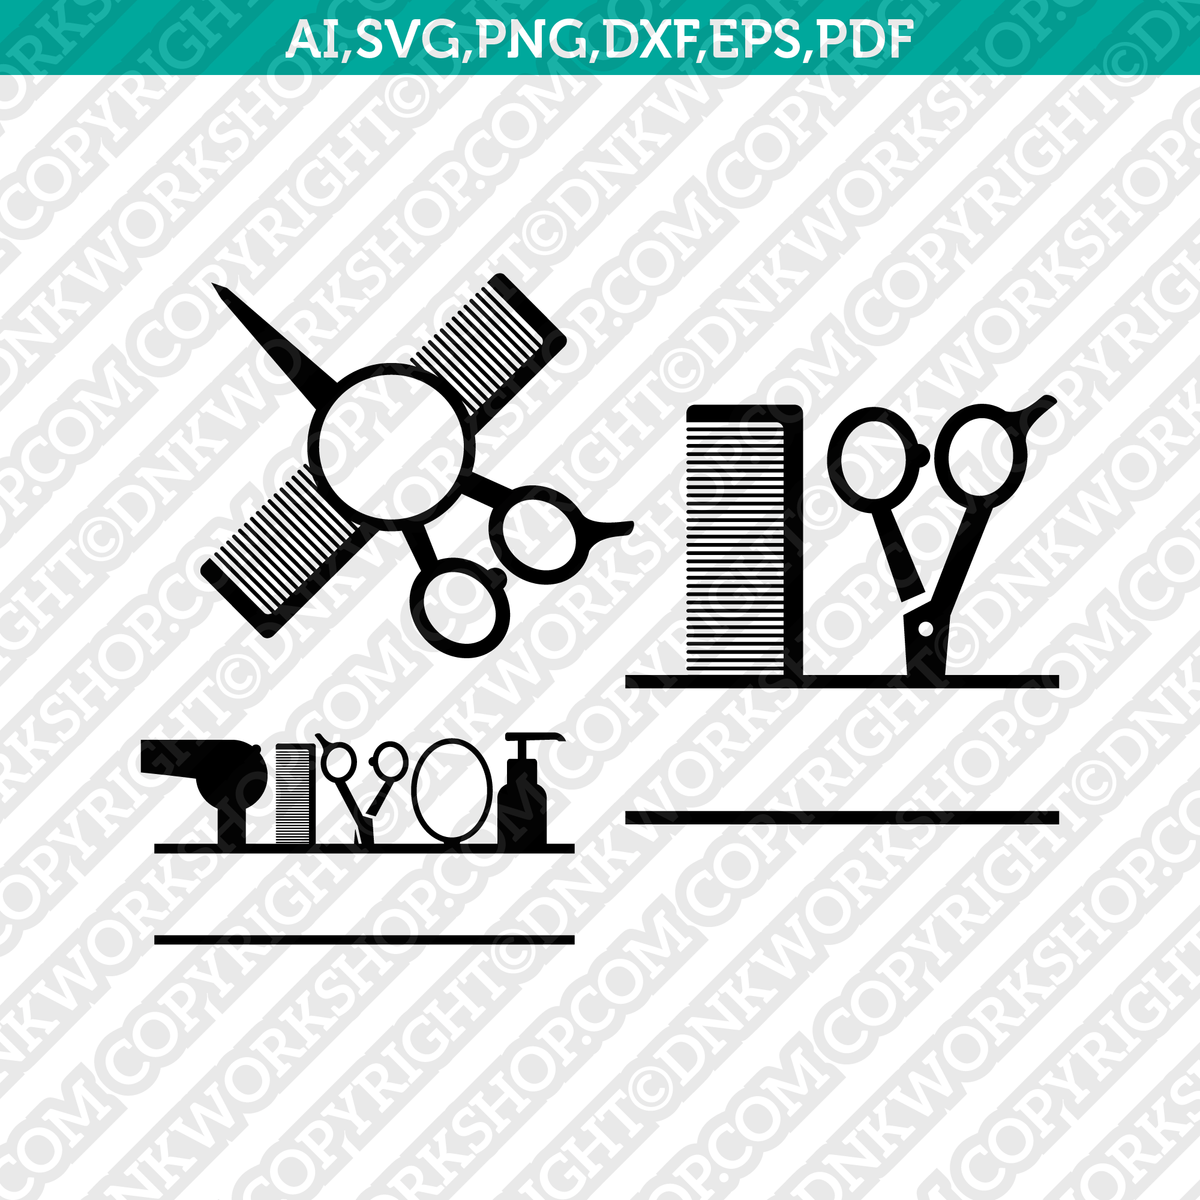 Hairdresser Scissors SVG cut file at